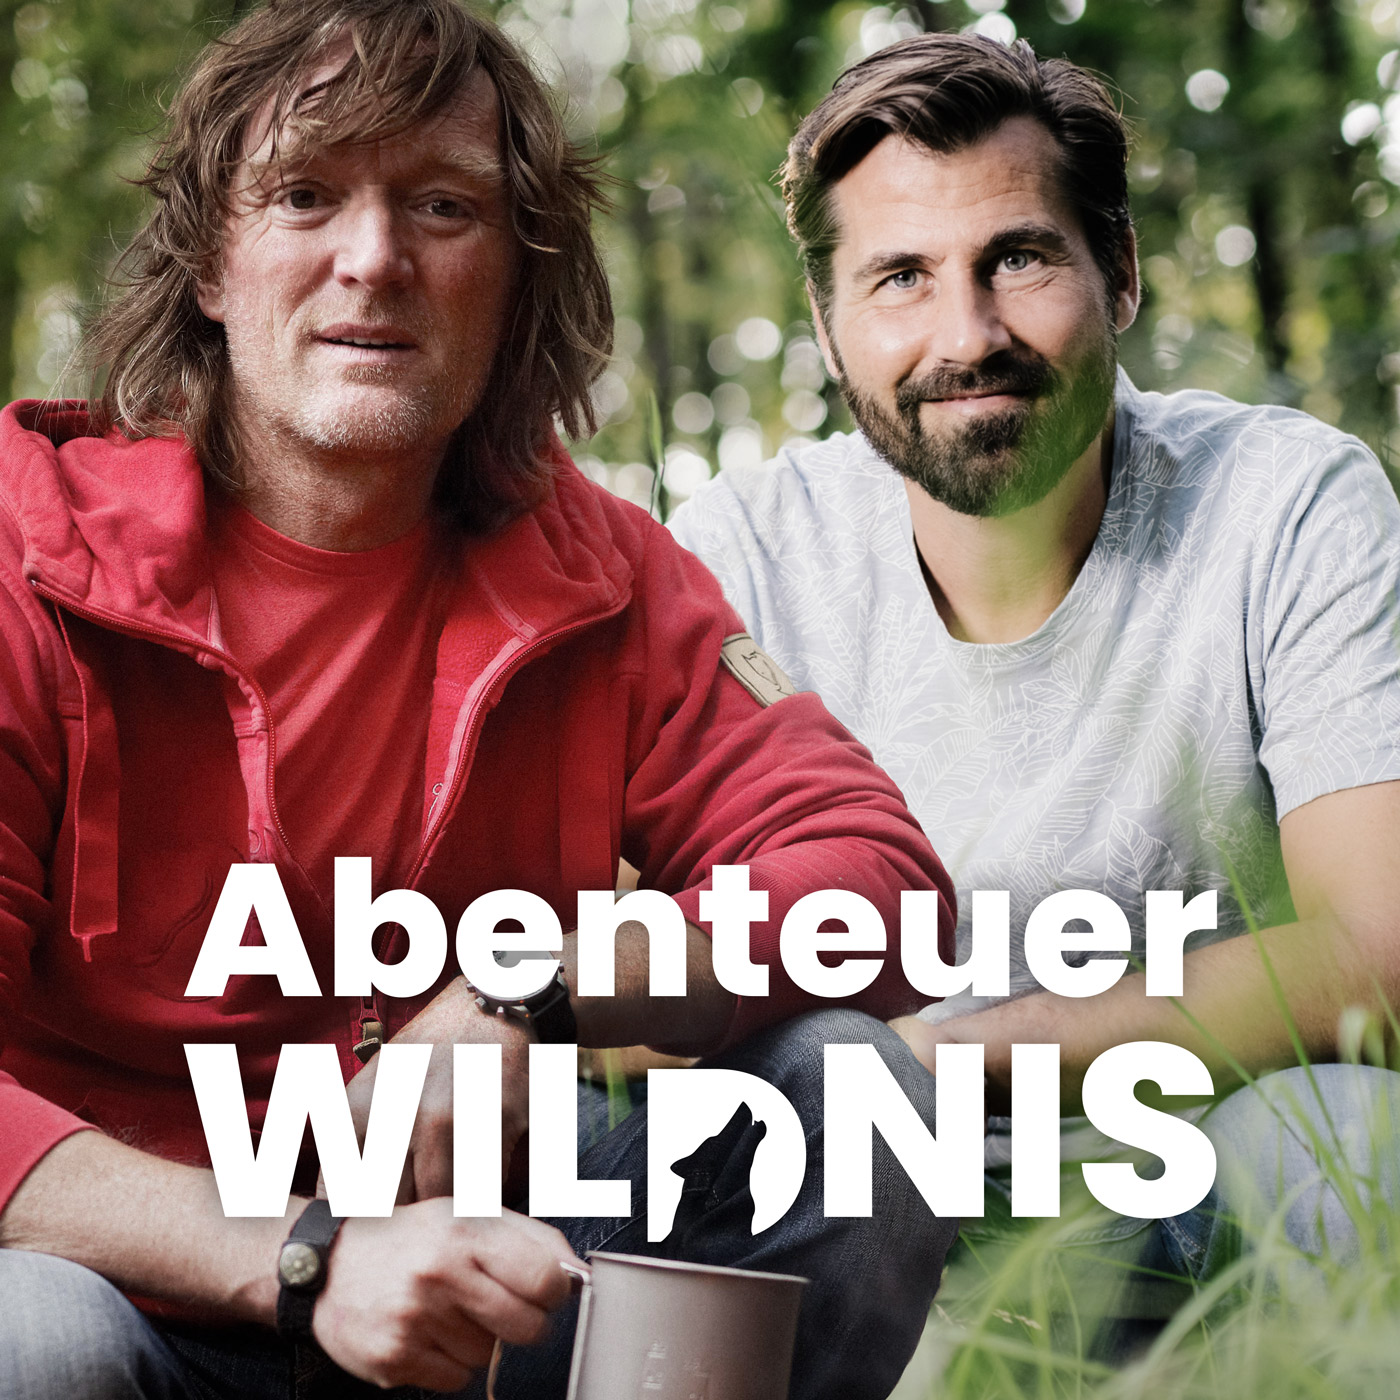 Abenteuer Wildnis. Der Tier- und Naturpodcast mit Andreas Kieling und Alexander Metzler